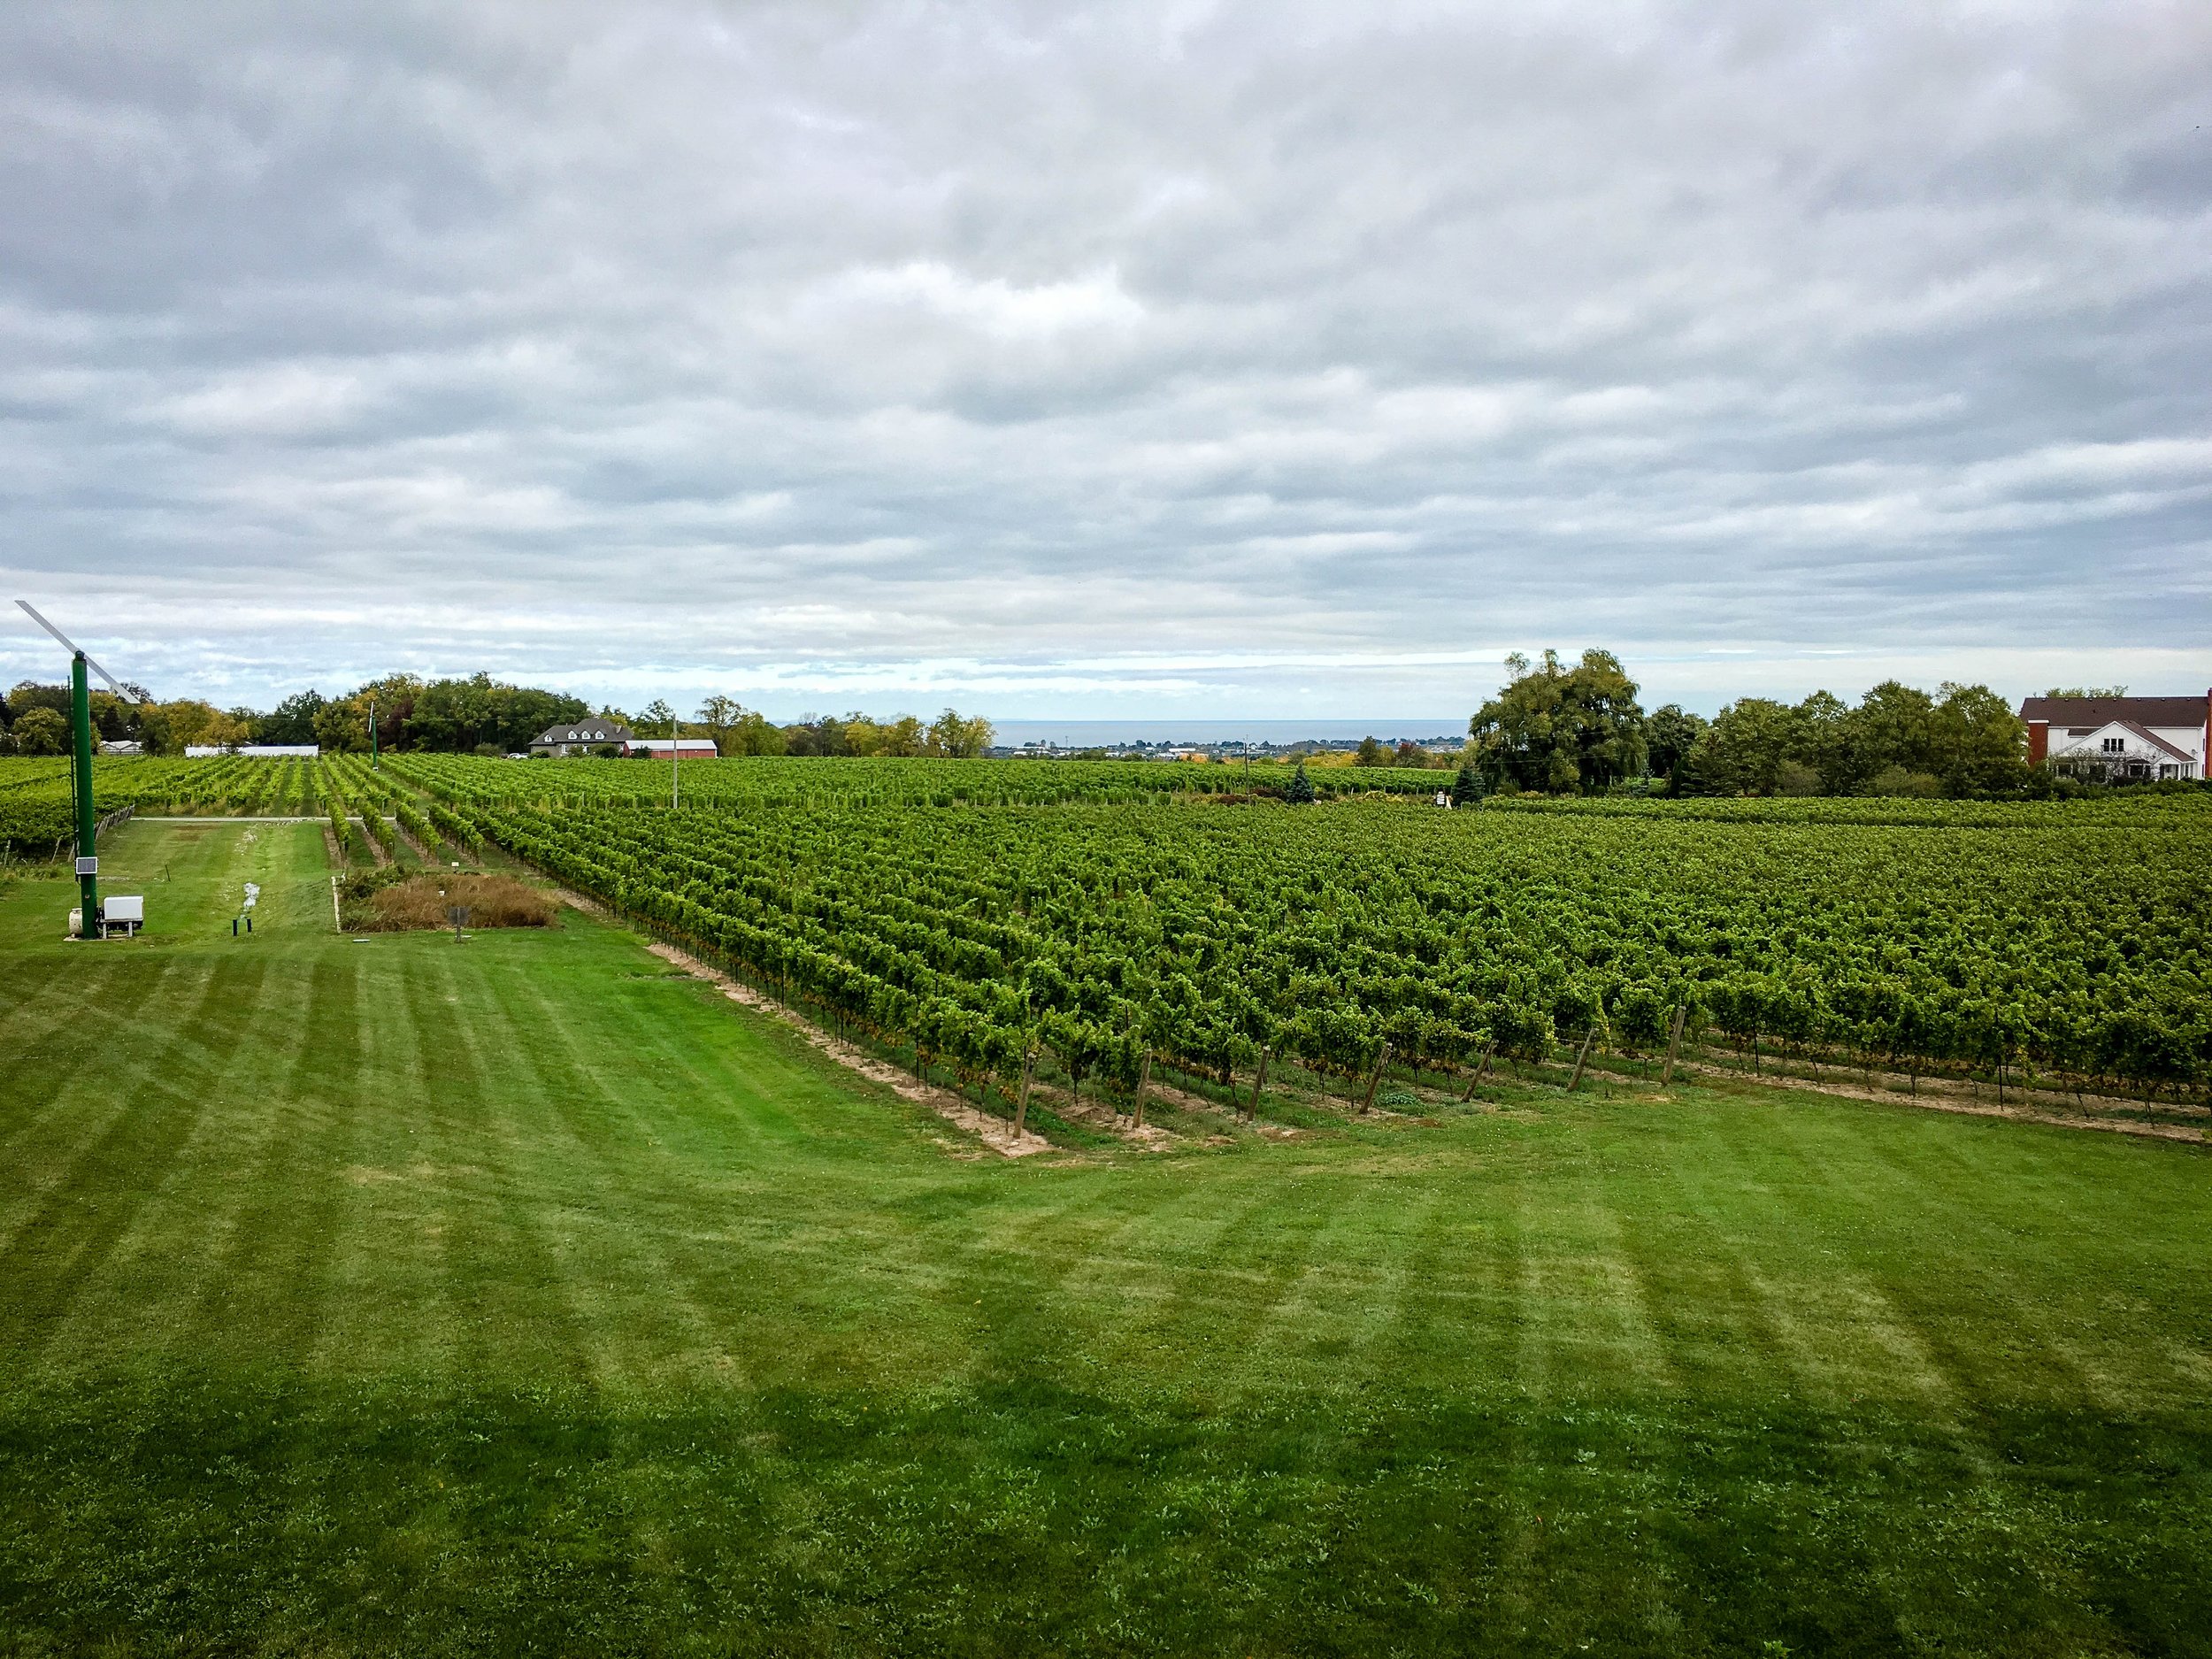 Vineyard at Niagara on the lake